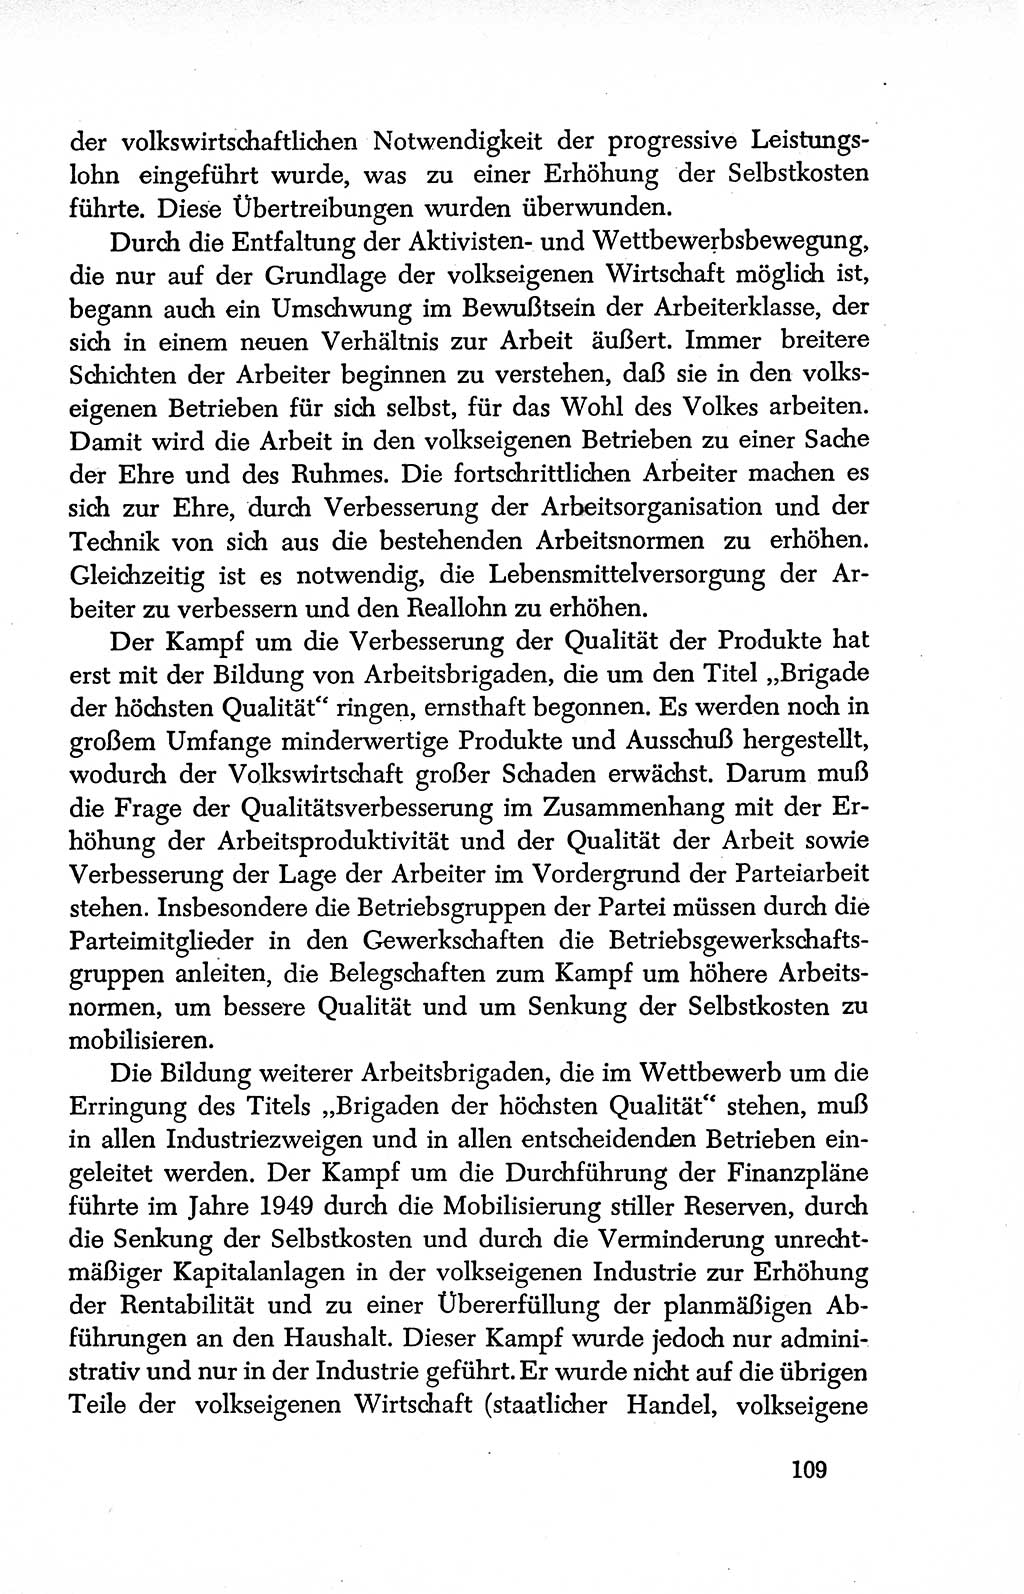 Dokumente der Sozialistischen Einheitspartei Deutschlands (SED) [Deutsche Demokratische Republik (DDR)] 1950-1952, Seite 109 (Dok. SED DDR 1950-1952, S. 109)